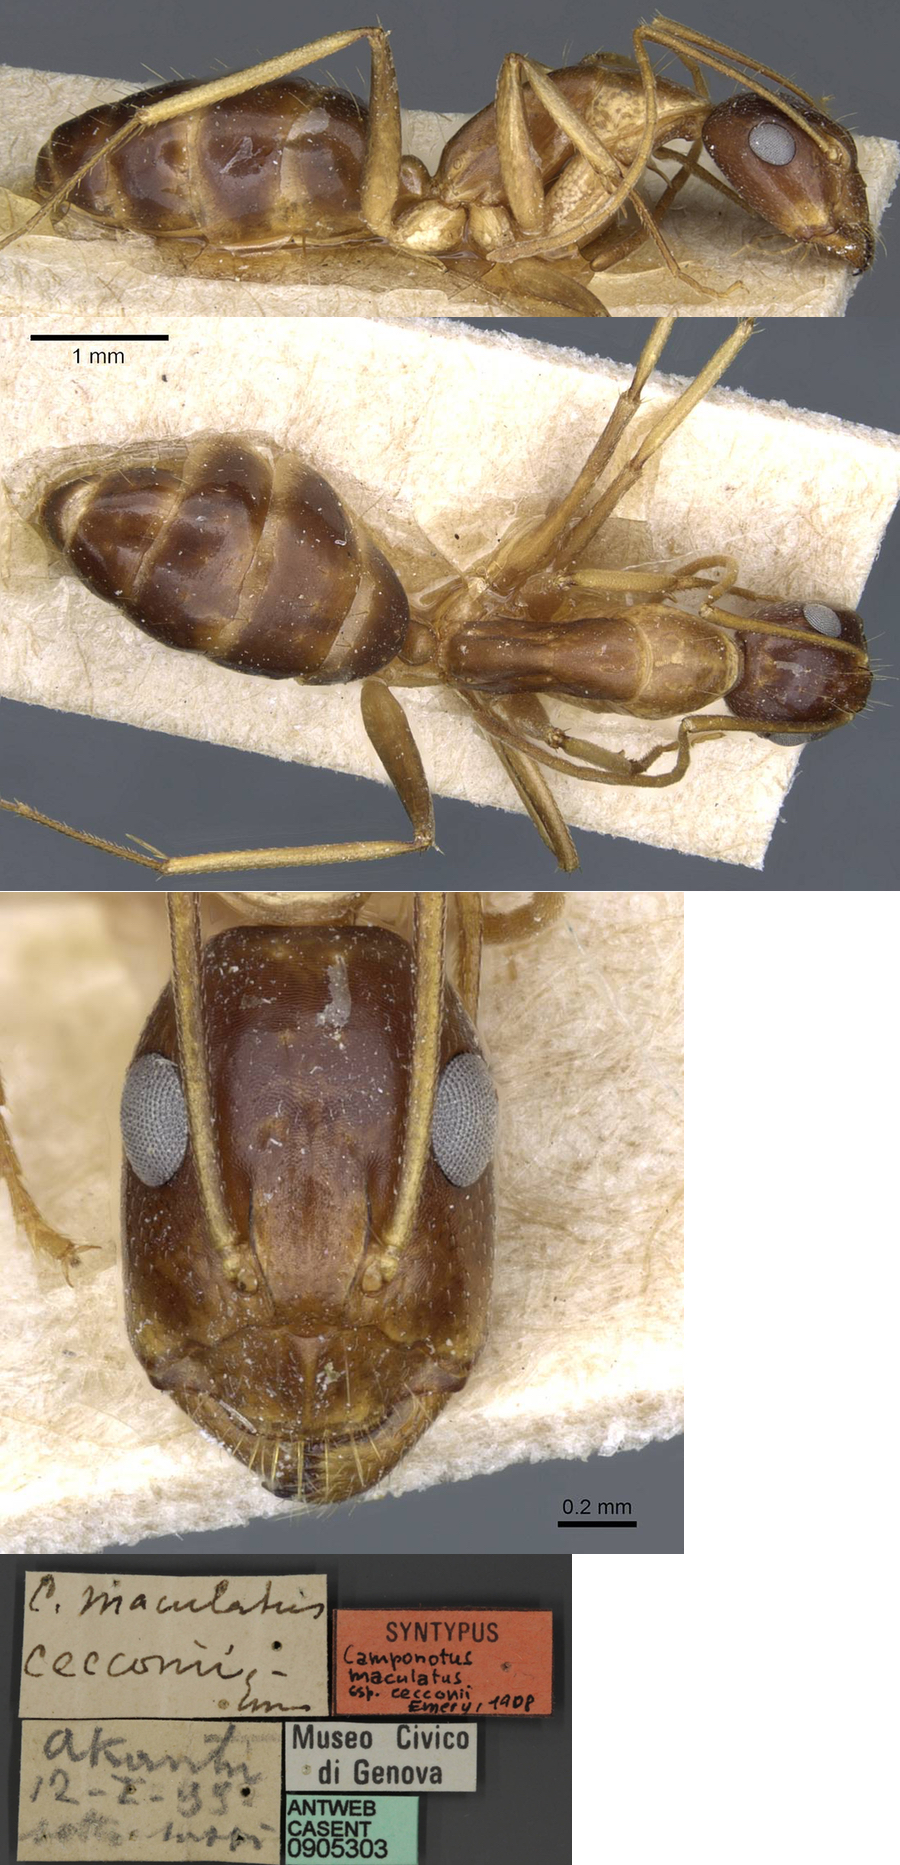 Camponotus cecconii minor